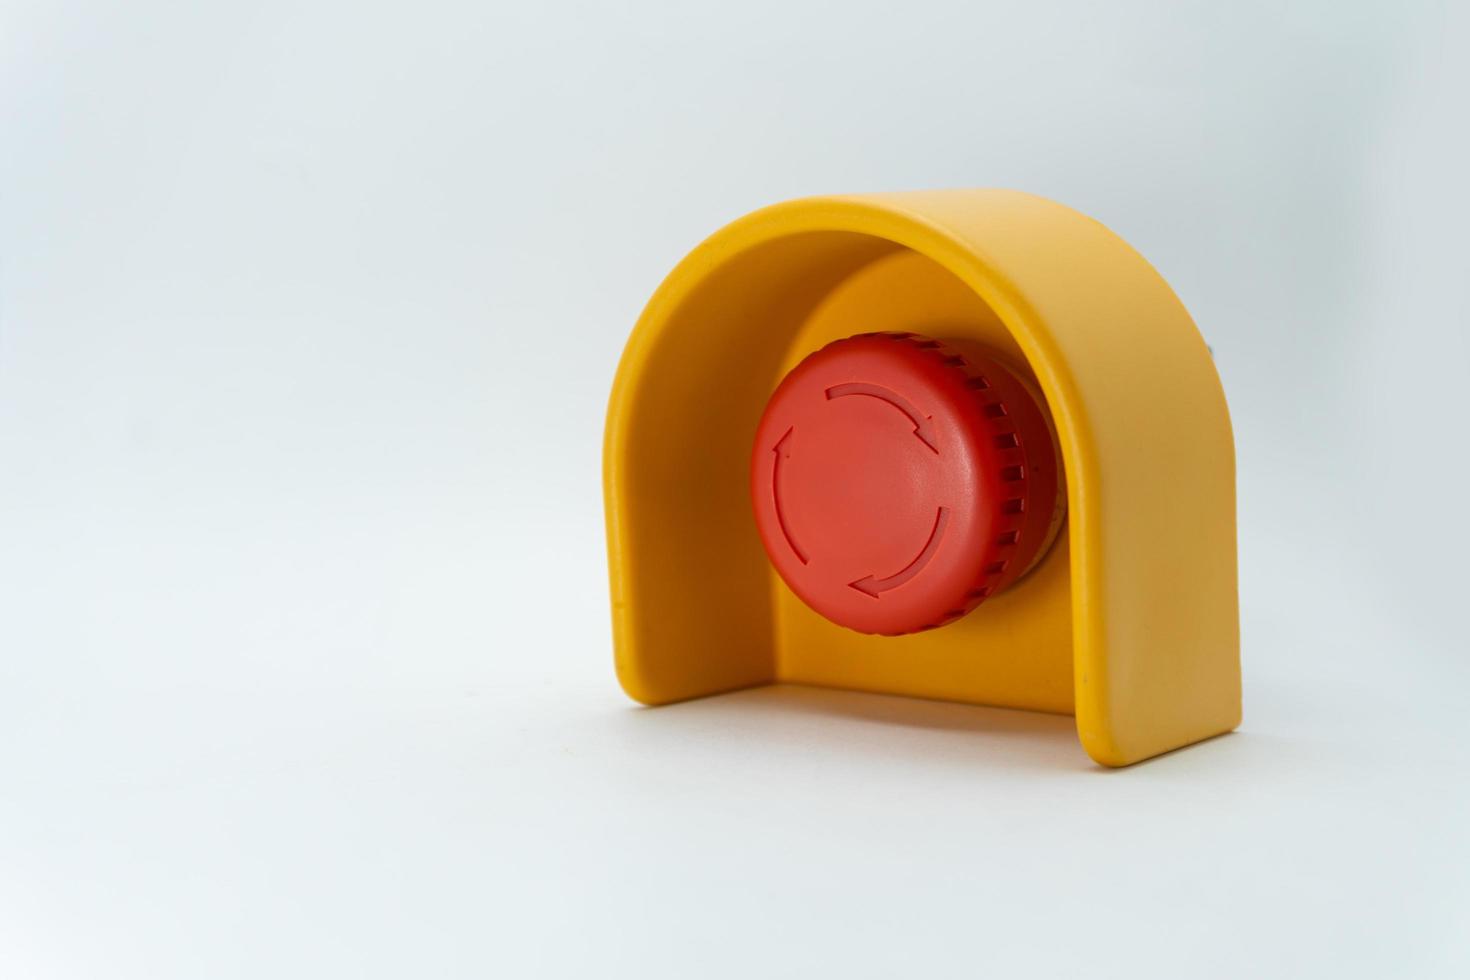 Stoppen Sie den roten Knopf und die Hand des Arbeiters, der ihn drücken will. Notaus-Knopf. großer roter Notknopf oder Stoppknopf zum manuellen Drücken. foto